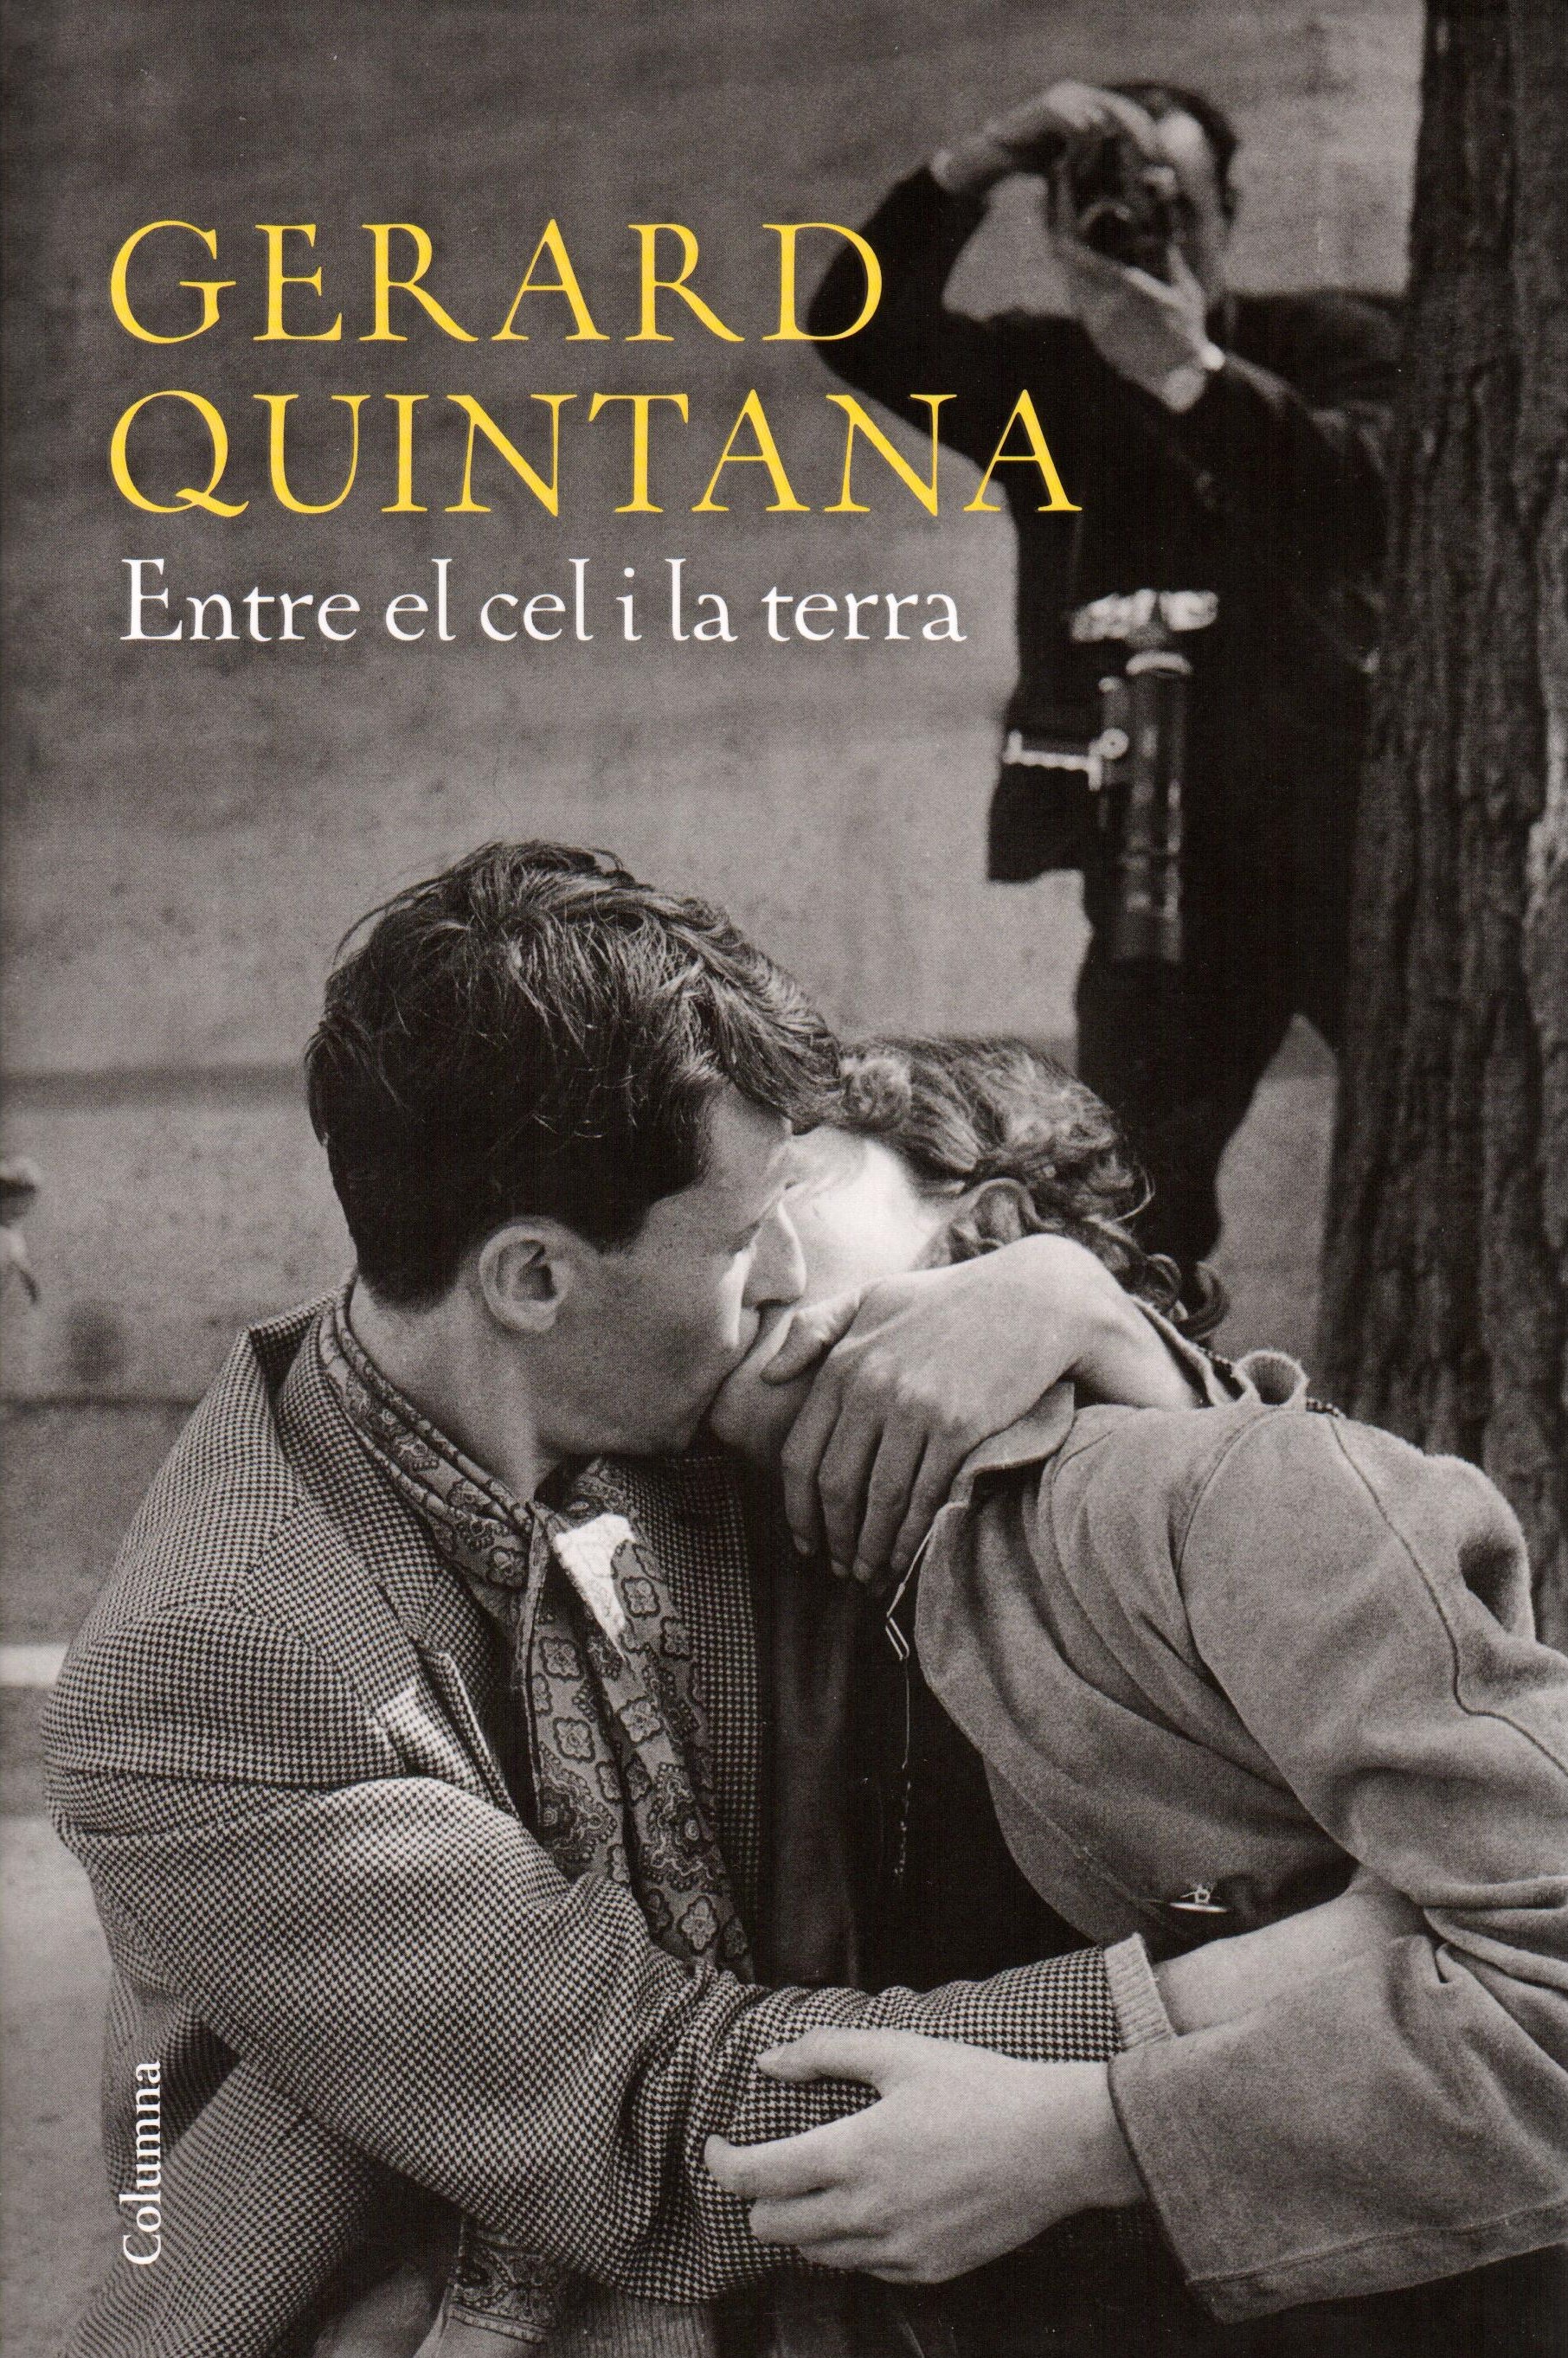 Gerard Quintana: "En la meva novel·la recupero moments que reflecteixen allò que estem vivint ara"